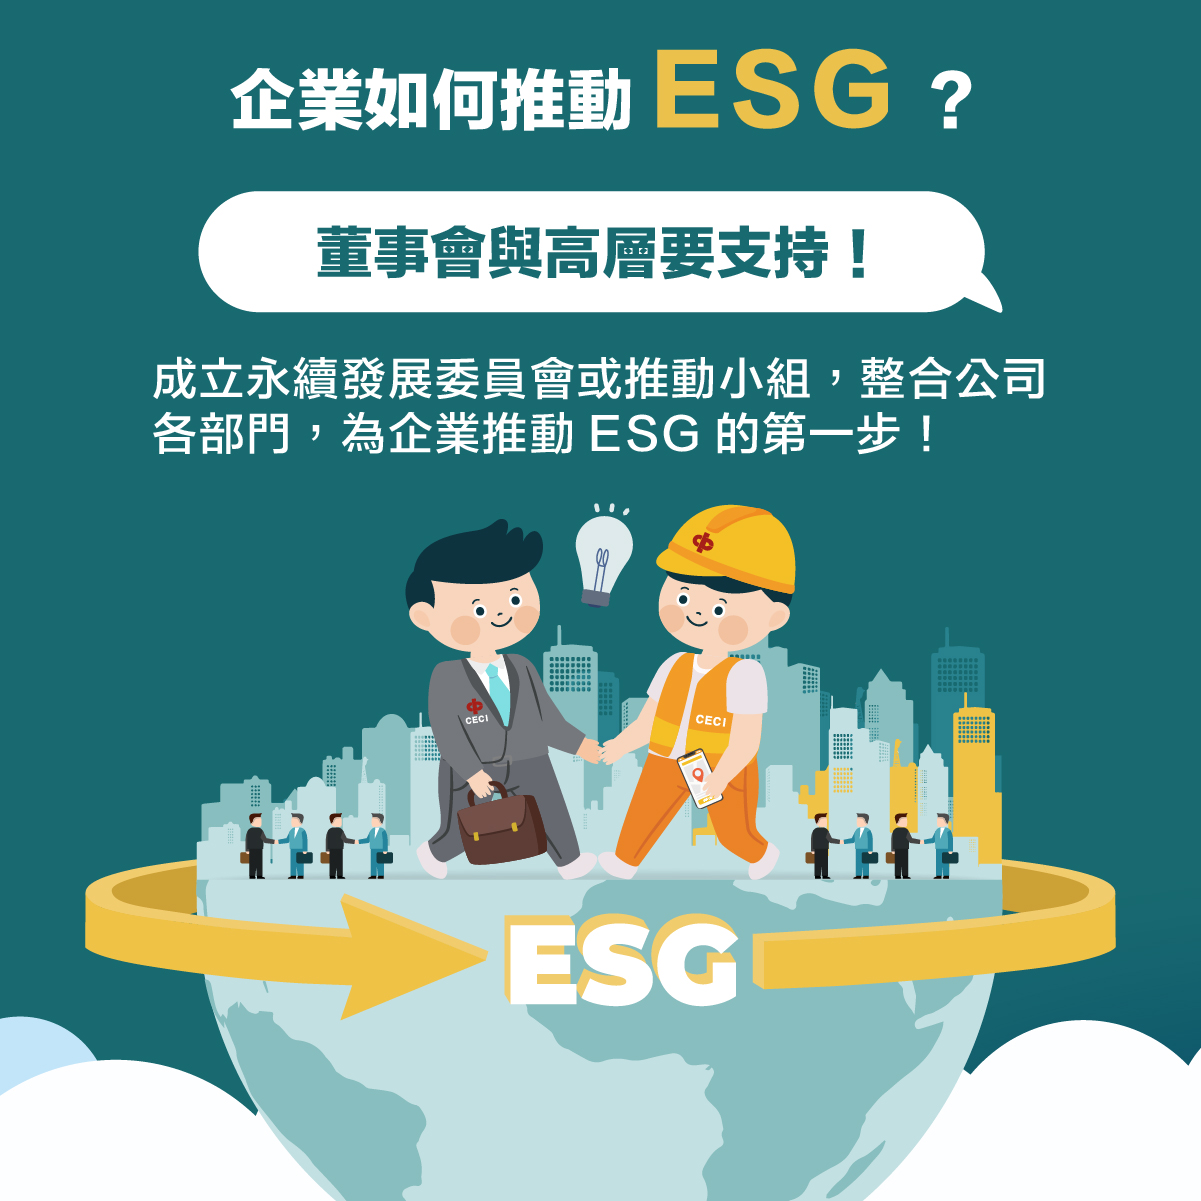 一次看懂ESG發展現況與未來趨勢